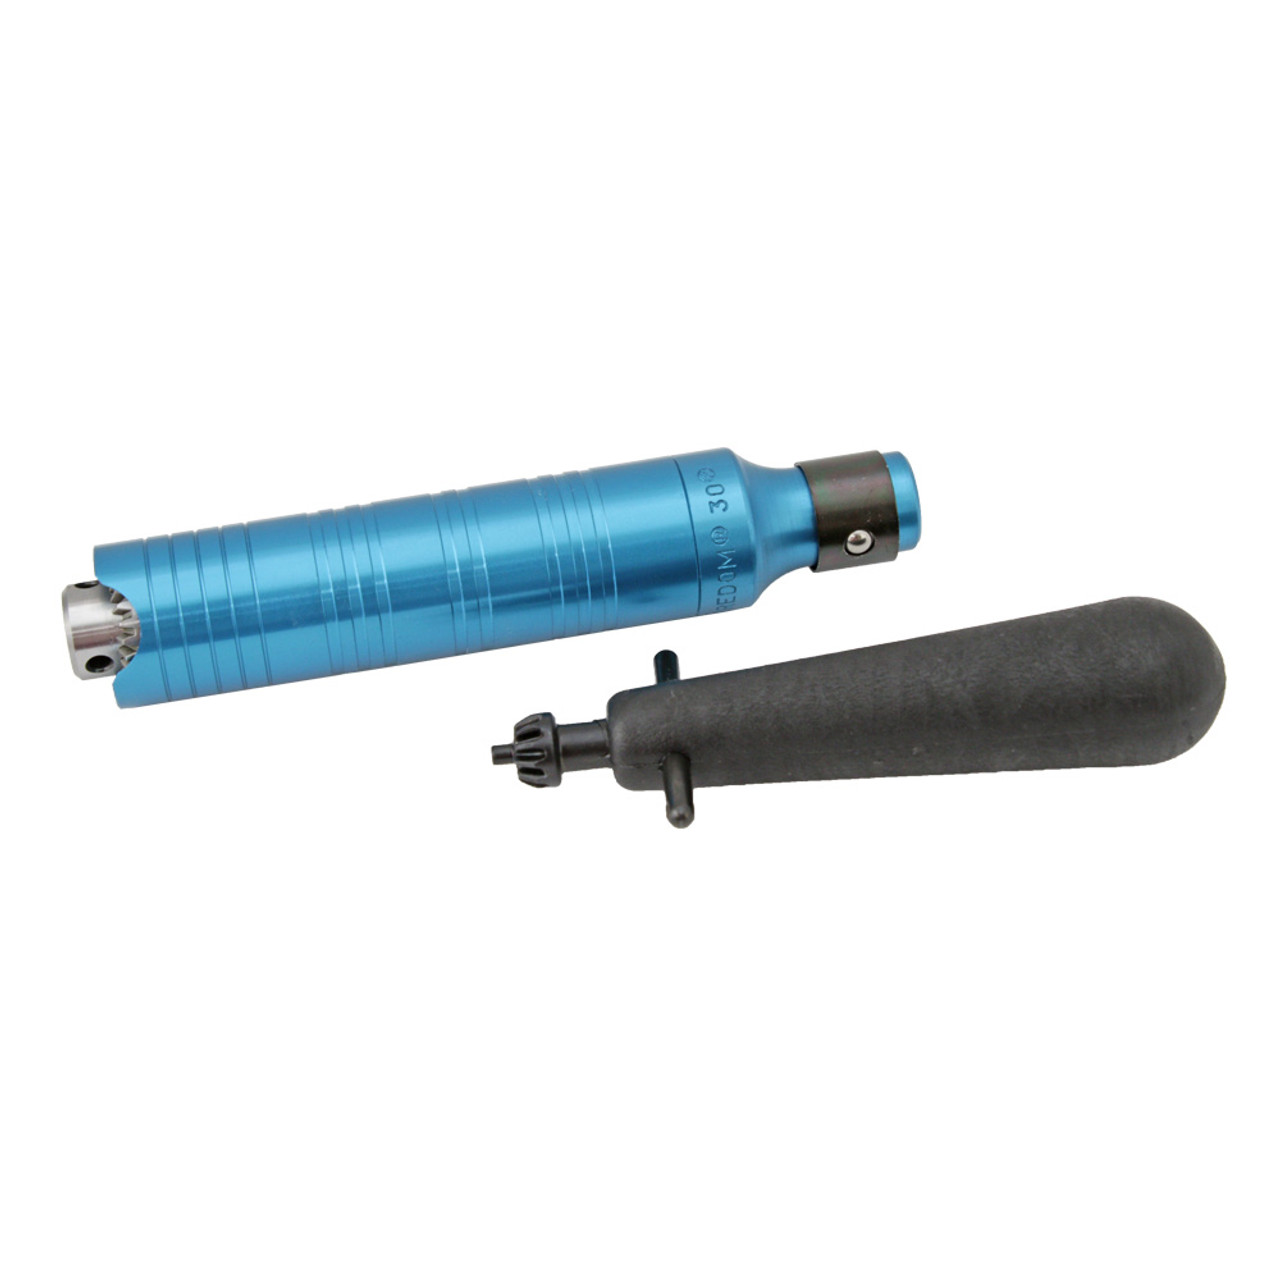 Flex Shaft Handpiece Drill - Foredom Drill Press